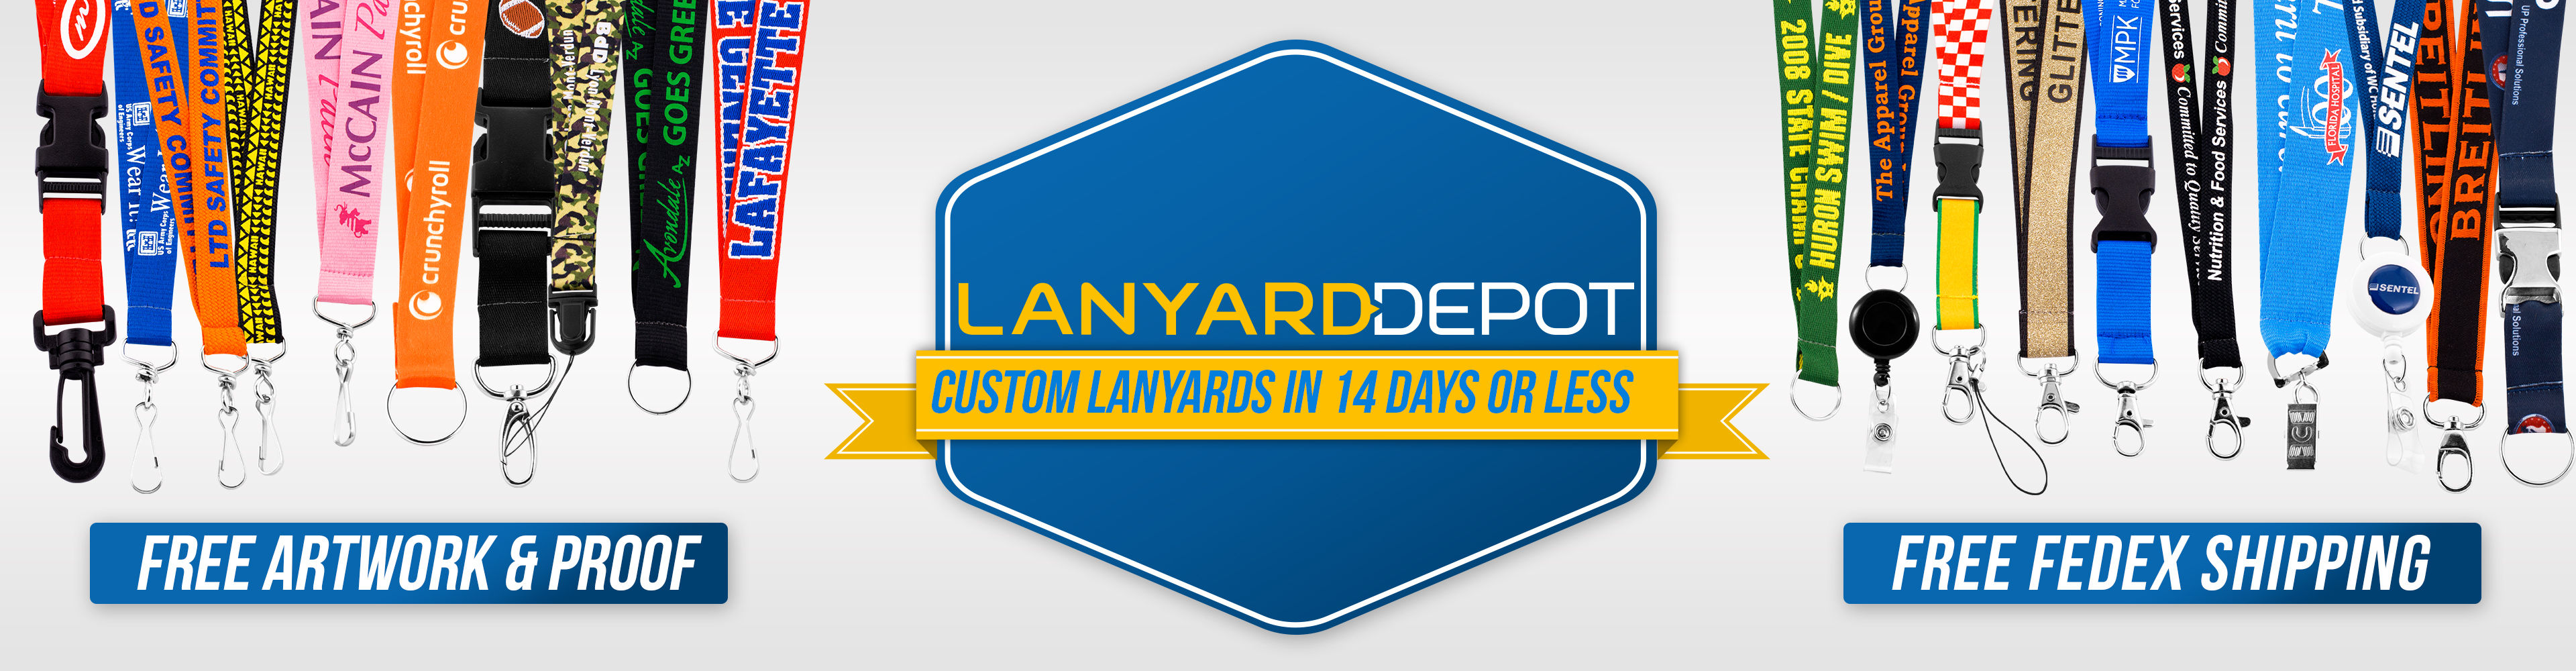 lanyard depot homepage banner